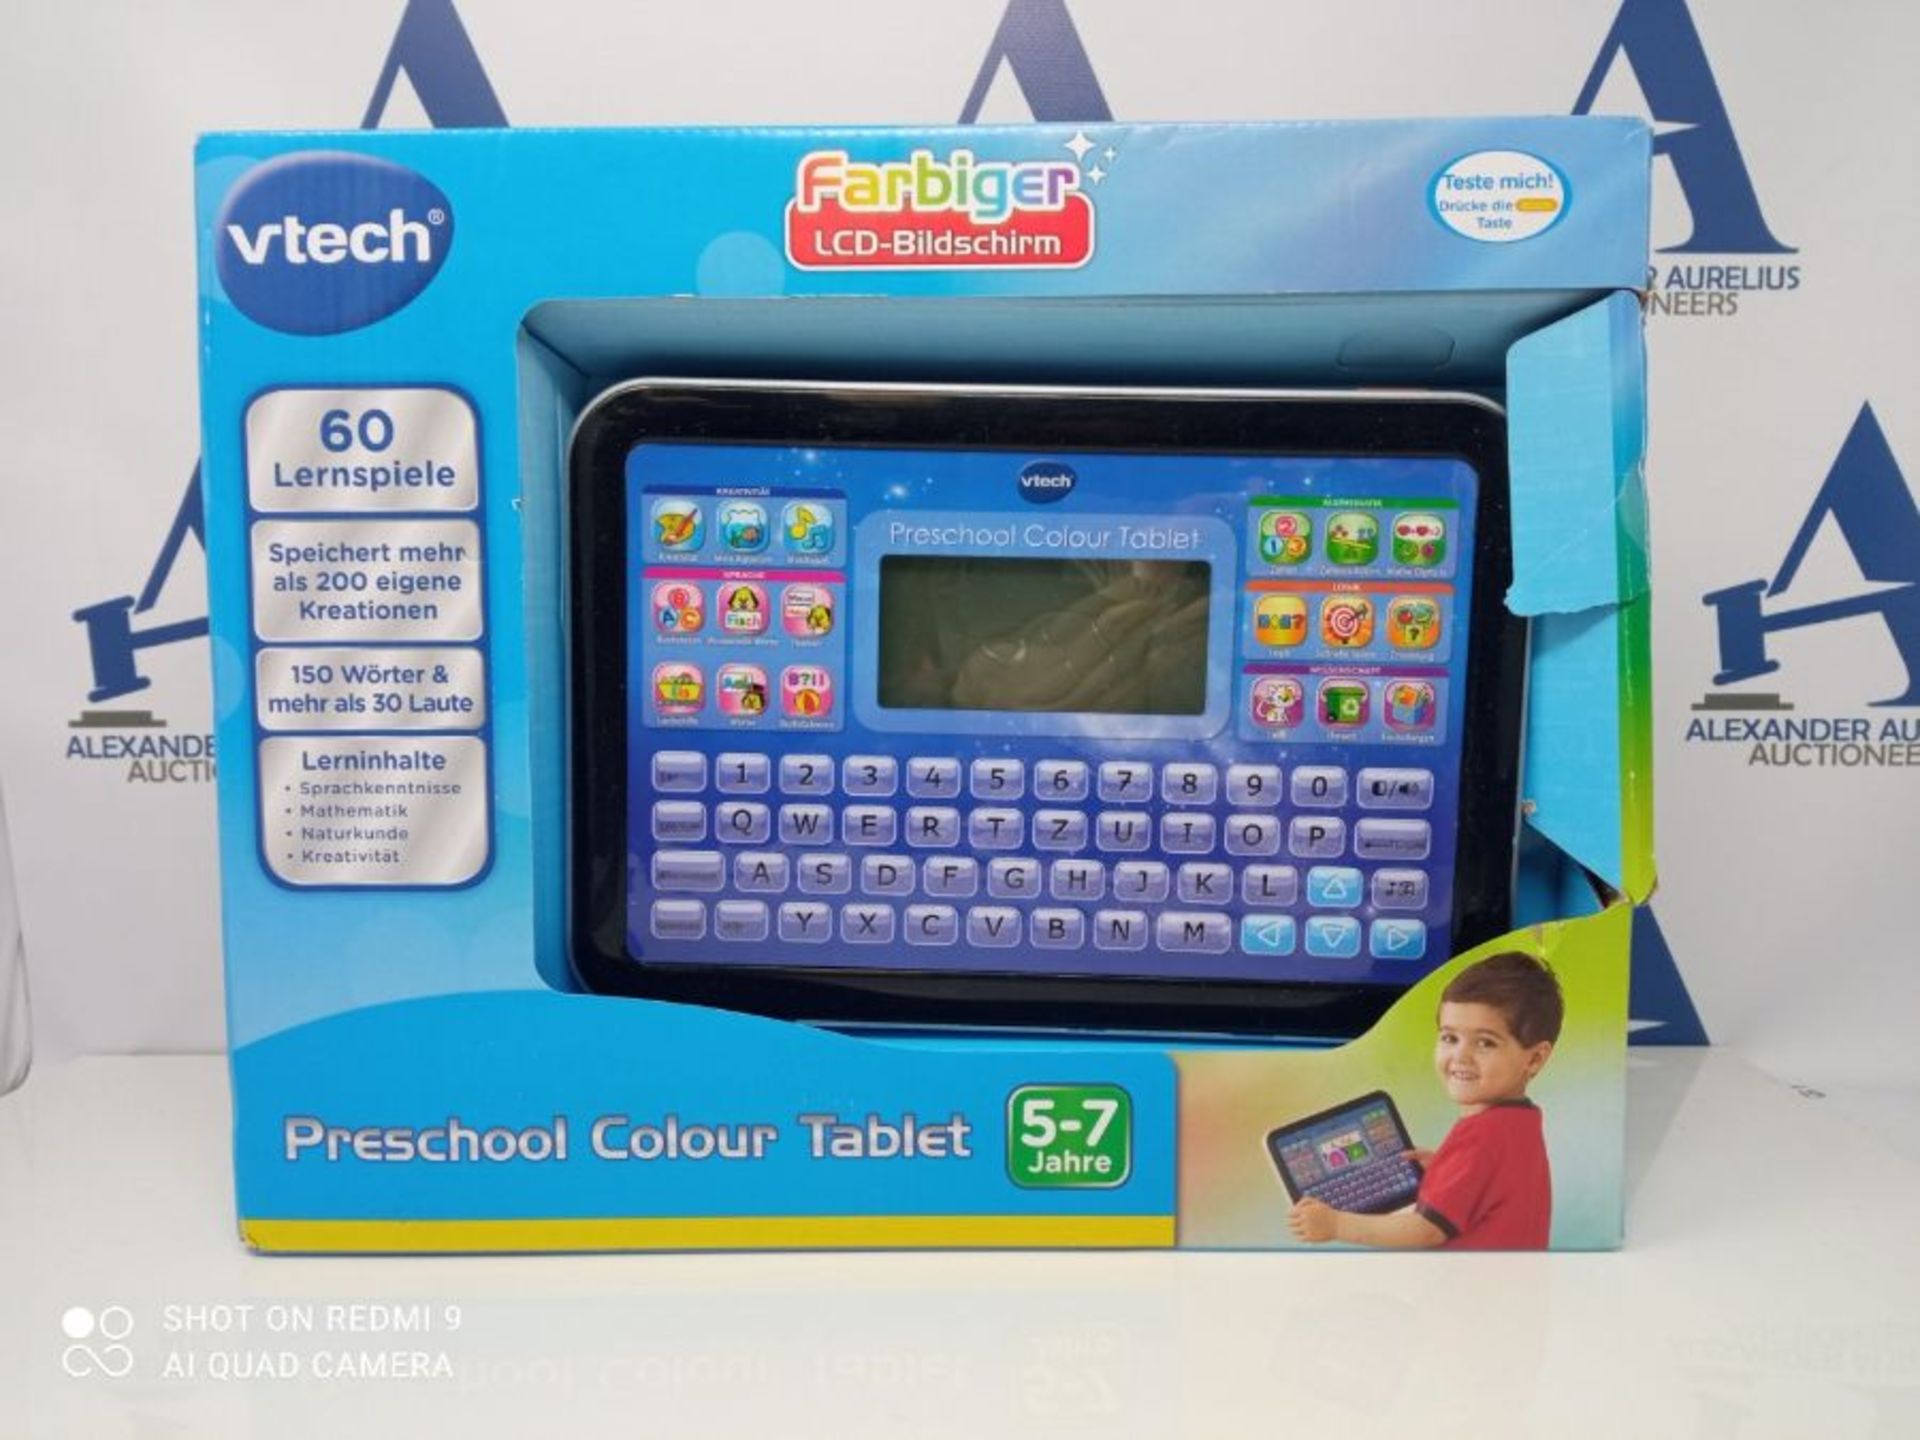 VTech Preschool Color Tablet Blue, German Version - Image 2 of 3